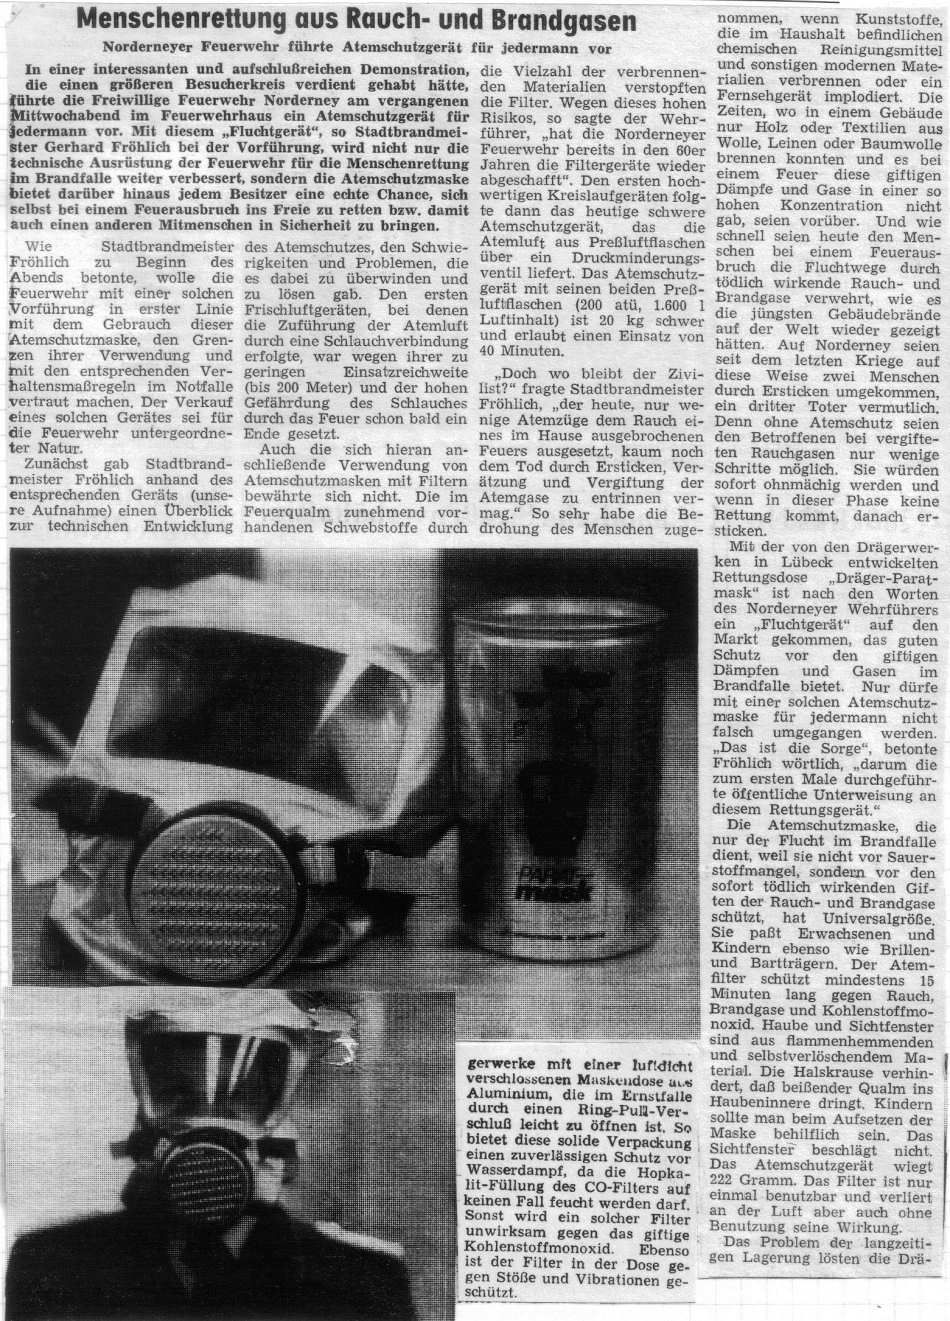 Die neue Volks-Rauch-Gasmaske für jedermann ist da. - 1984